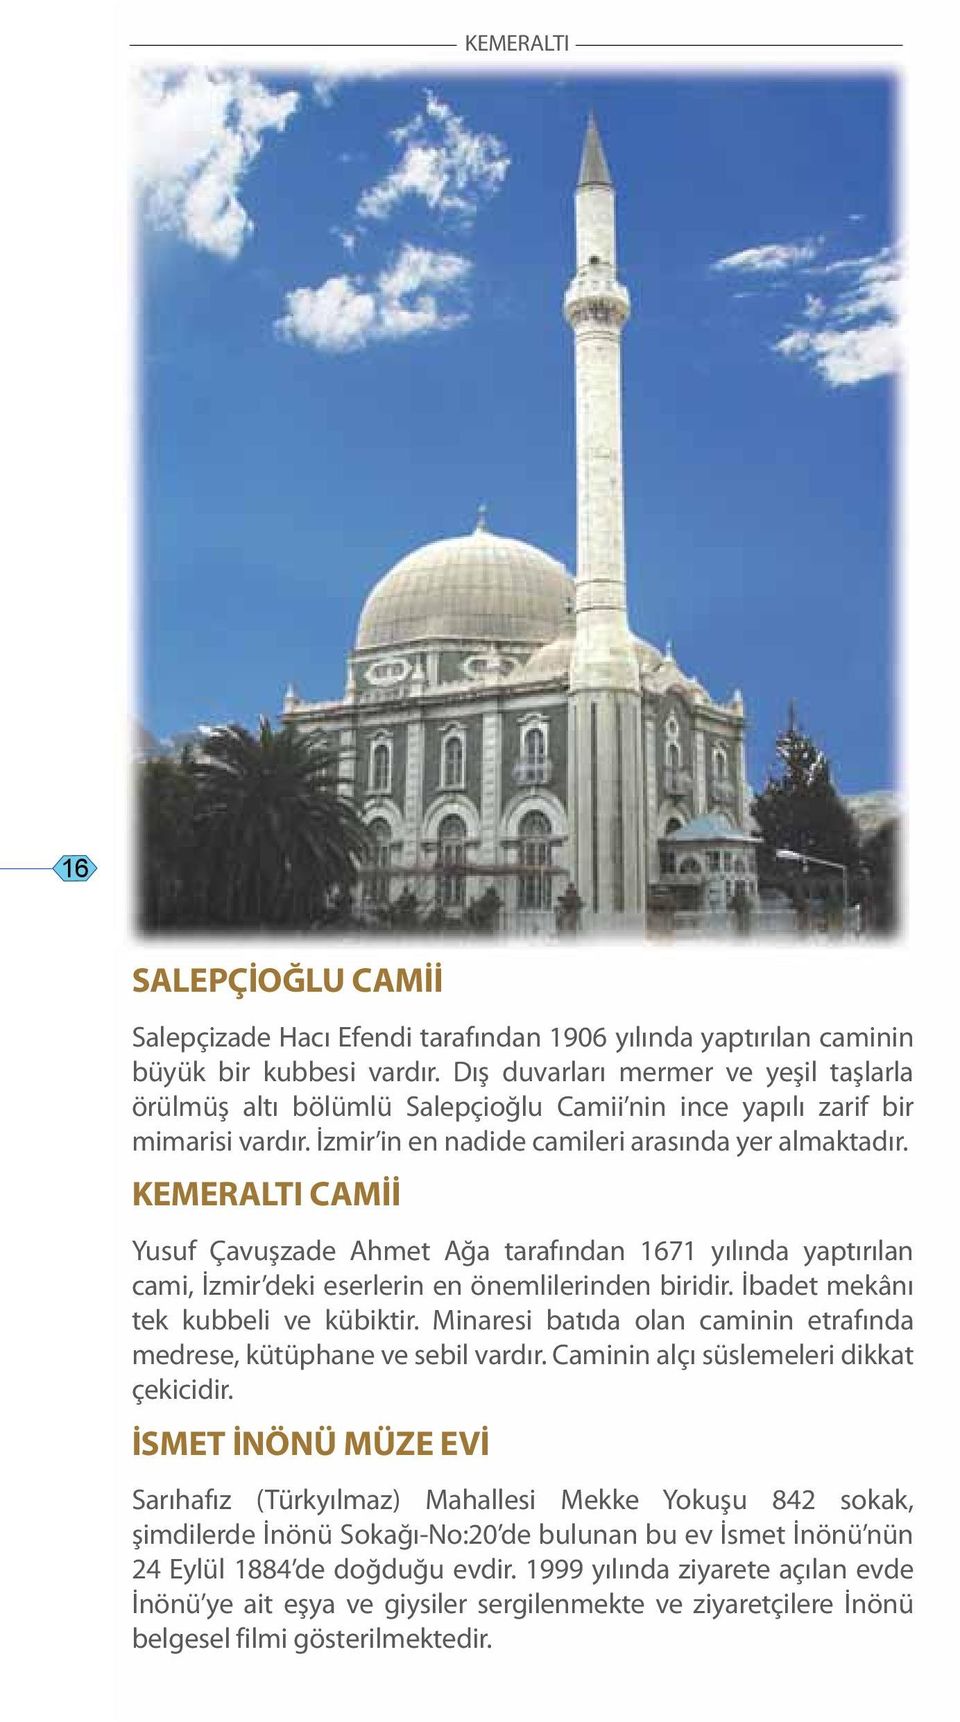 KEMERALTI CAMİİ Yusuf Çavuşzade Ahmet Ağa tarafından 1671 yılında yaptırılan cami, İzmir deki eserlerin en önemlilerinden biridir. İbadet mekânı tek kubbeli ve kübiktir.